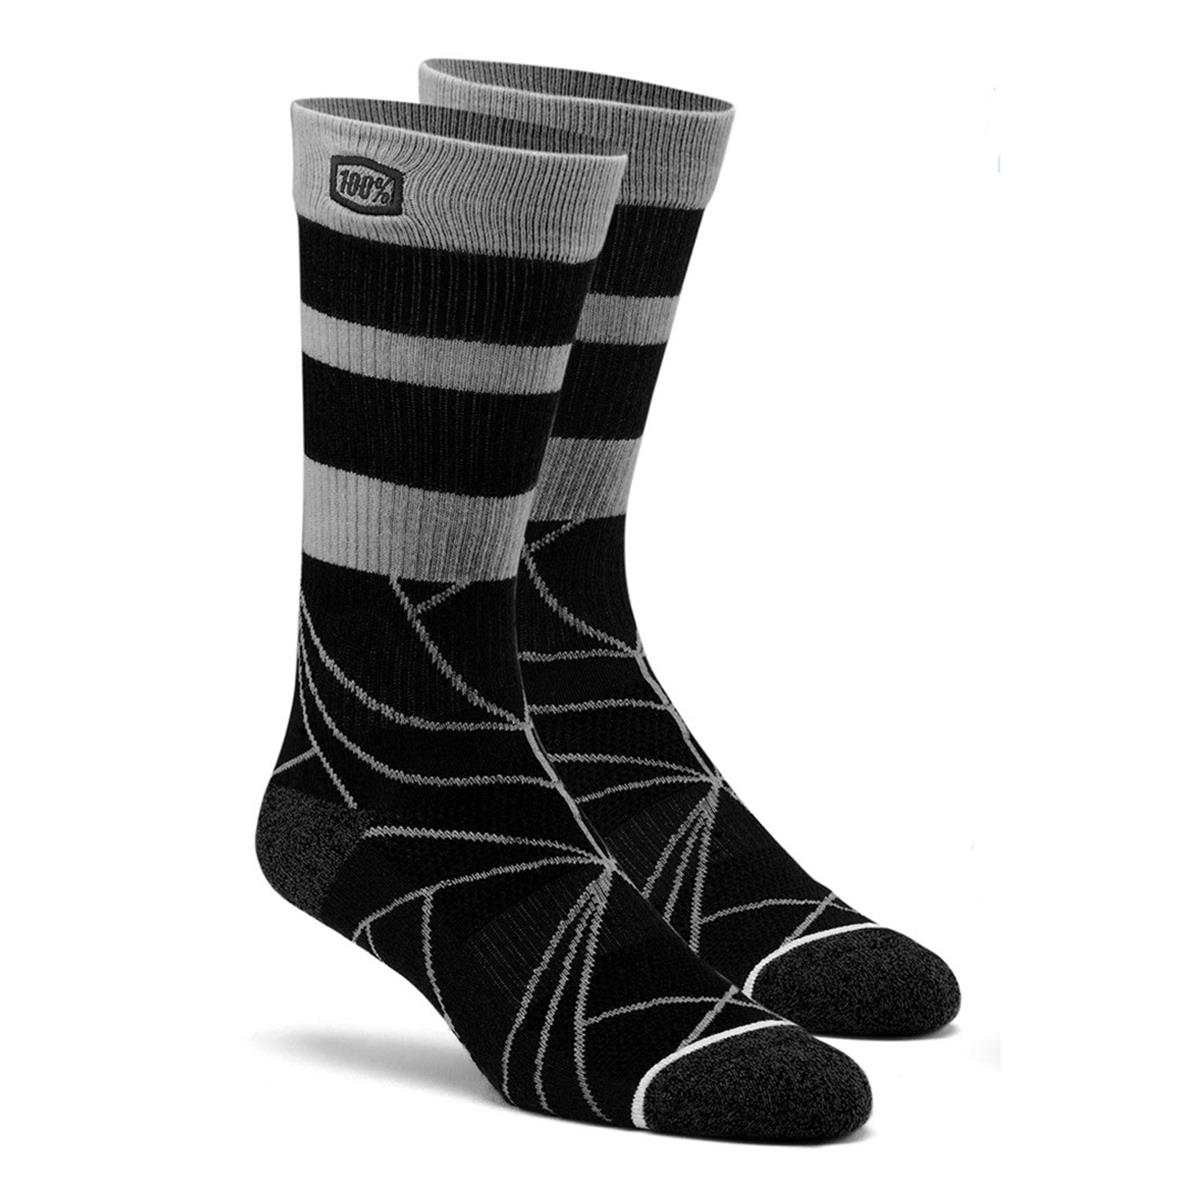 100% Socks Fracture Black